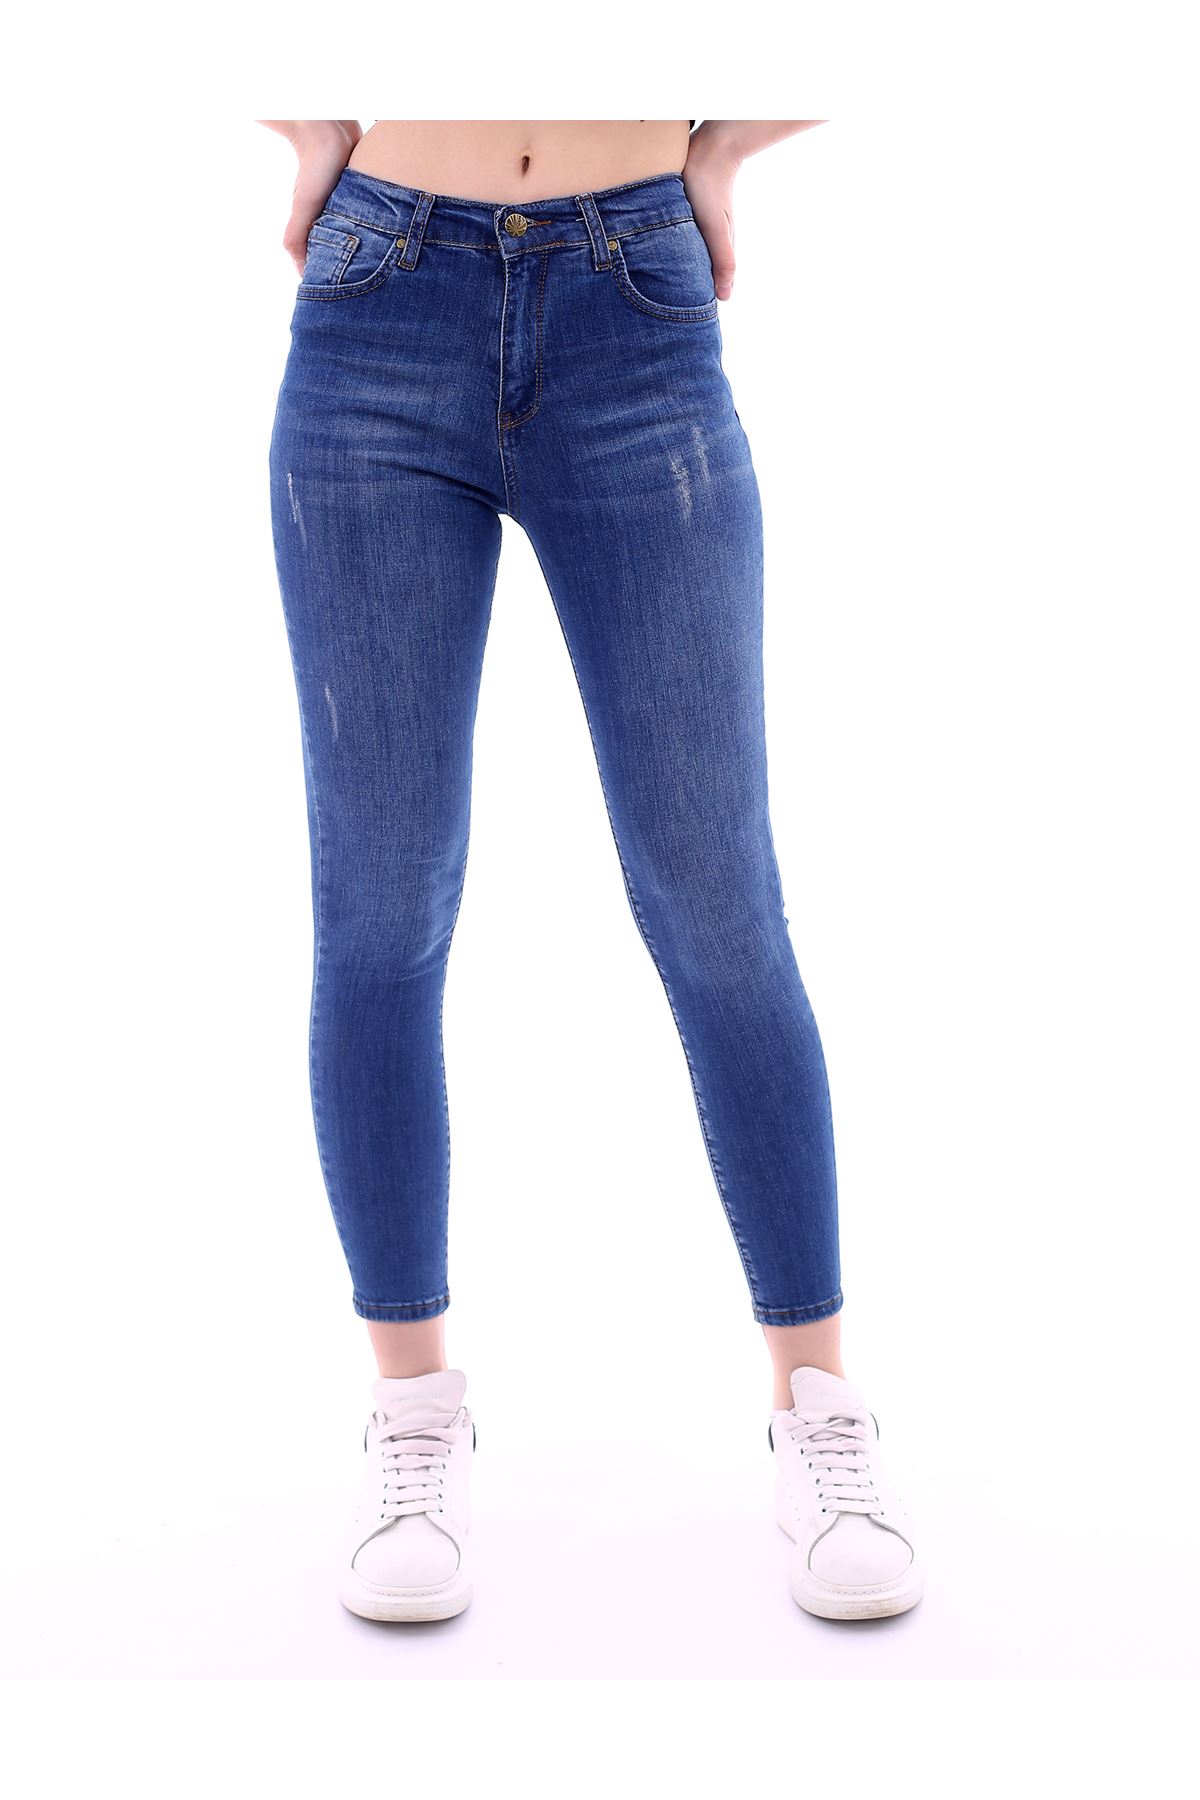 Kadın Mavi Likralı Lazer Tırnaklı Yüksek Bel Denim Kot Pantolon 